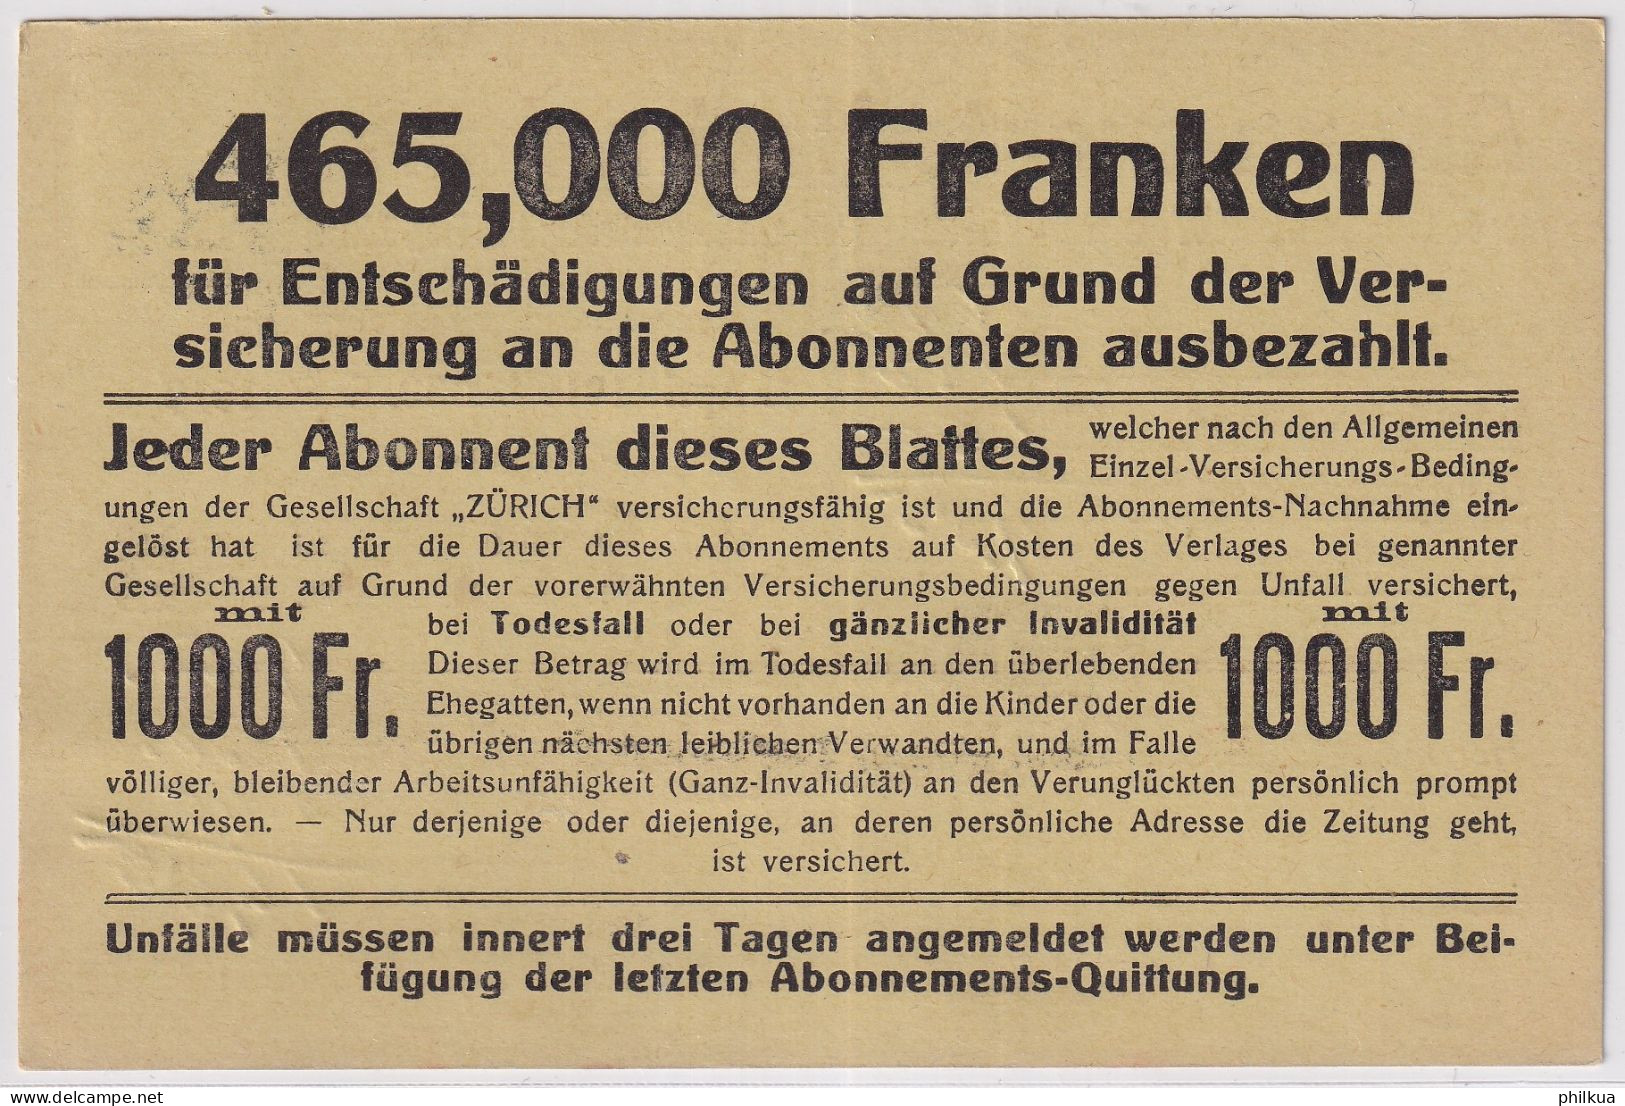 Zum. 139 / MiNr. 139x Auf Abonnements NN-Karte - Schweizer Wochen-Zeitung - Zürich Seelnau - Winterthur - Covers & Documents